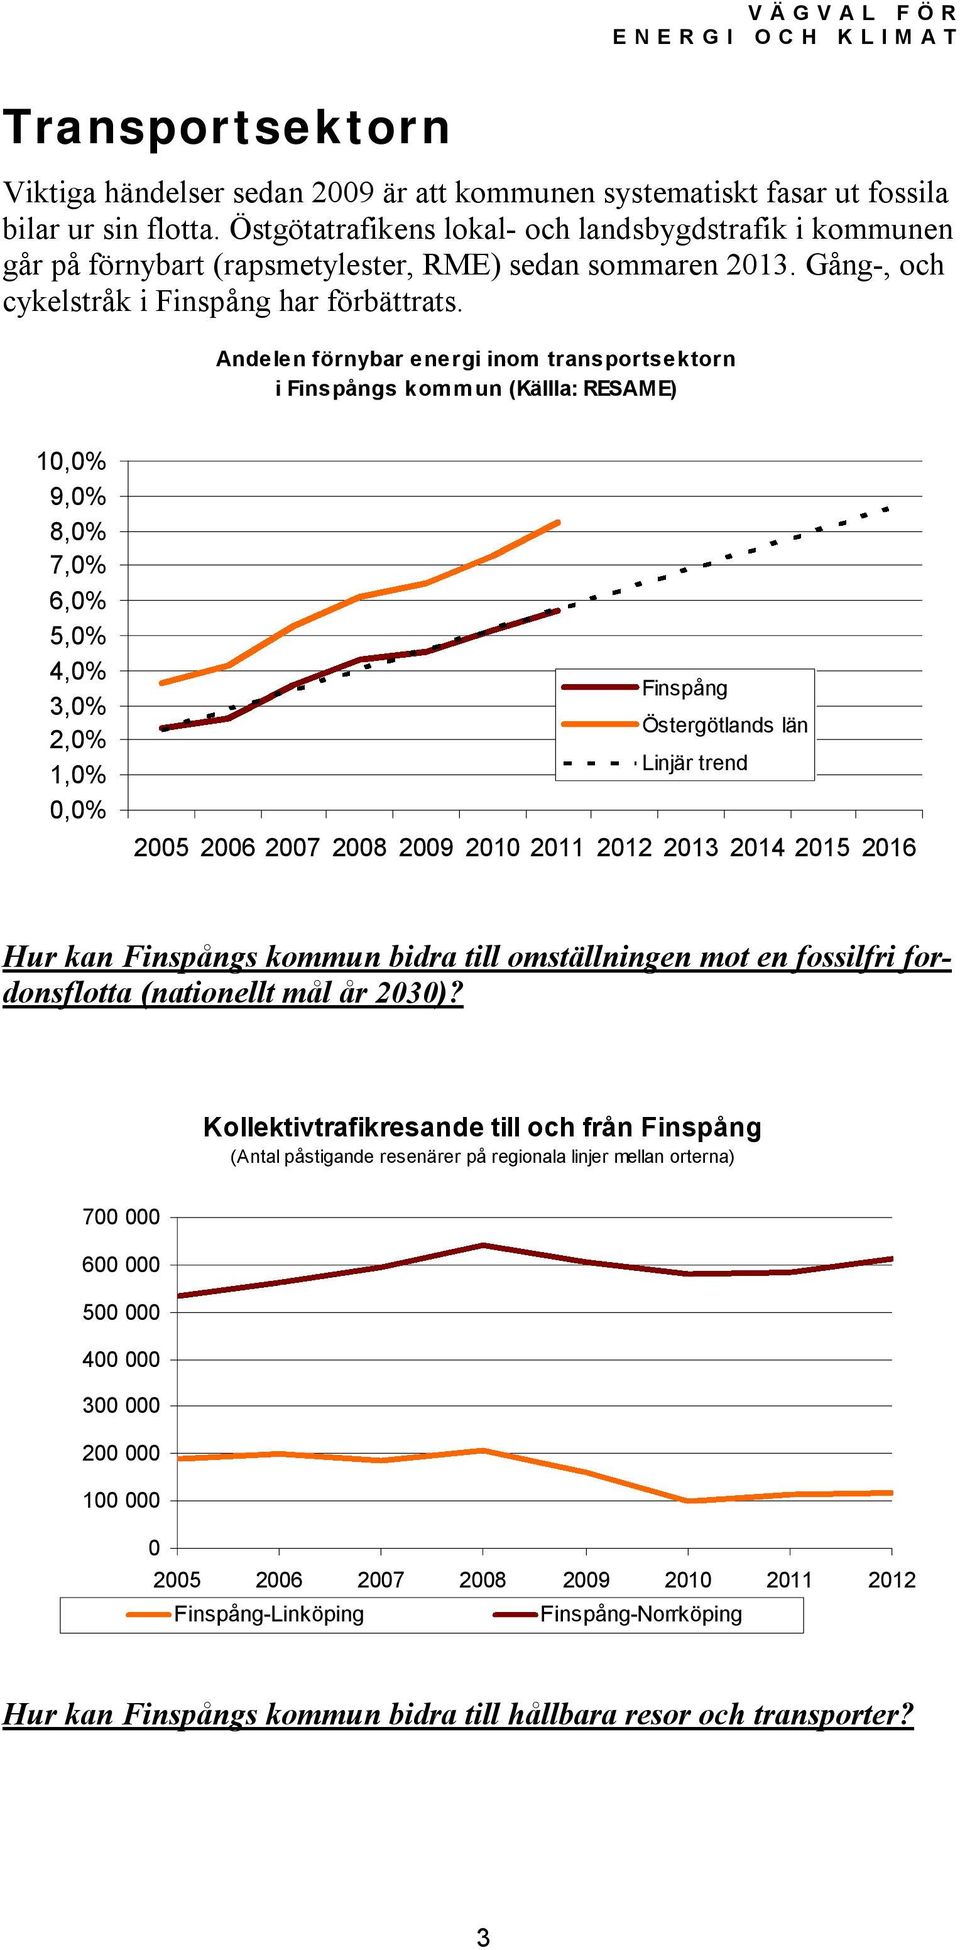 Andelen förnybar energi inom transportsektorn i Finspångs kommun (Källla: RESAME) 10,0% 9,0% 8,0% 7,0% 6,0% 5,0% 4,0% 3,0% 2,0% 1,0% 0,0% Finspång Östergötlands län Linjär trend 2005 2006 2007 2008